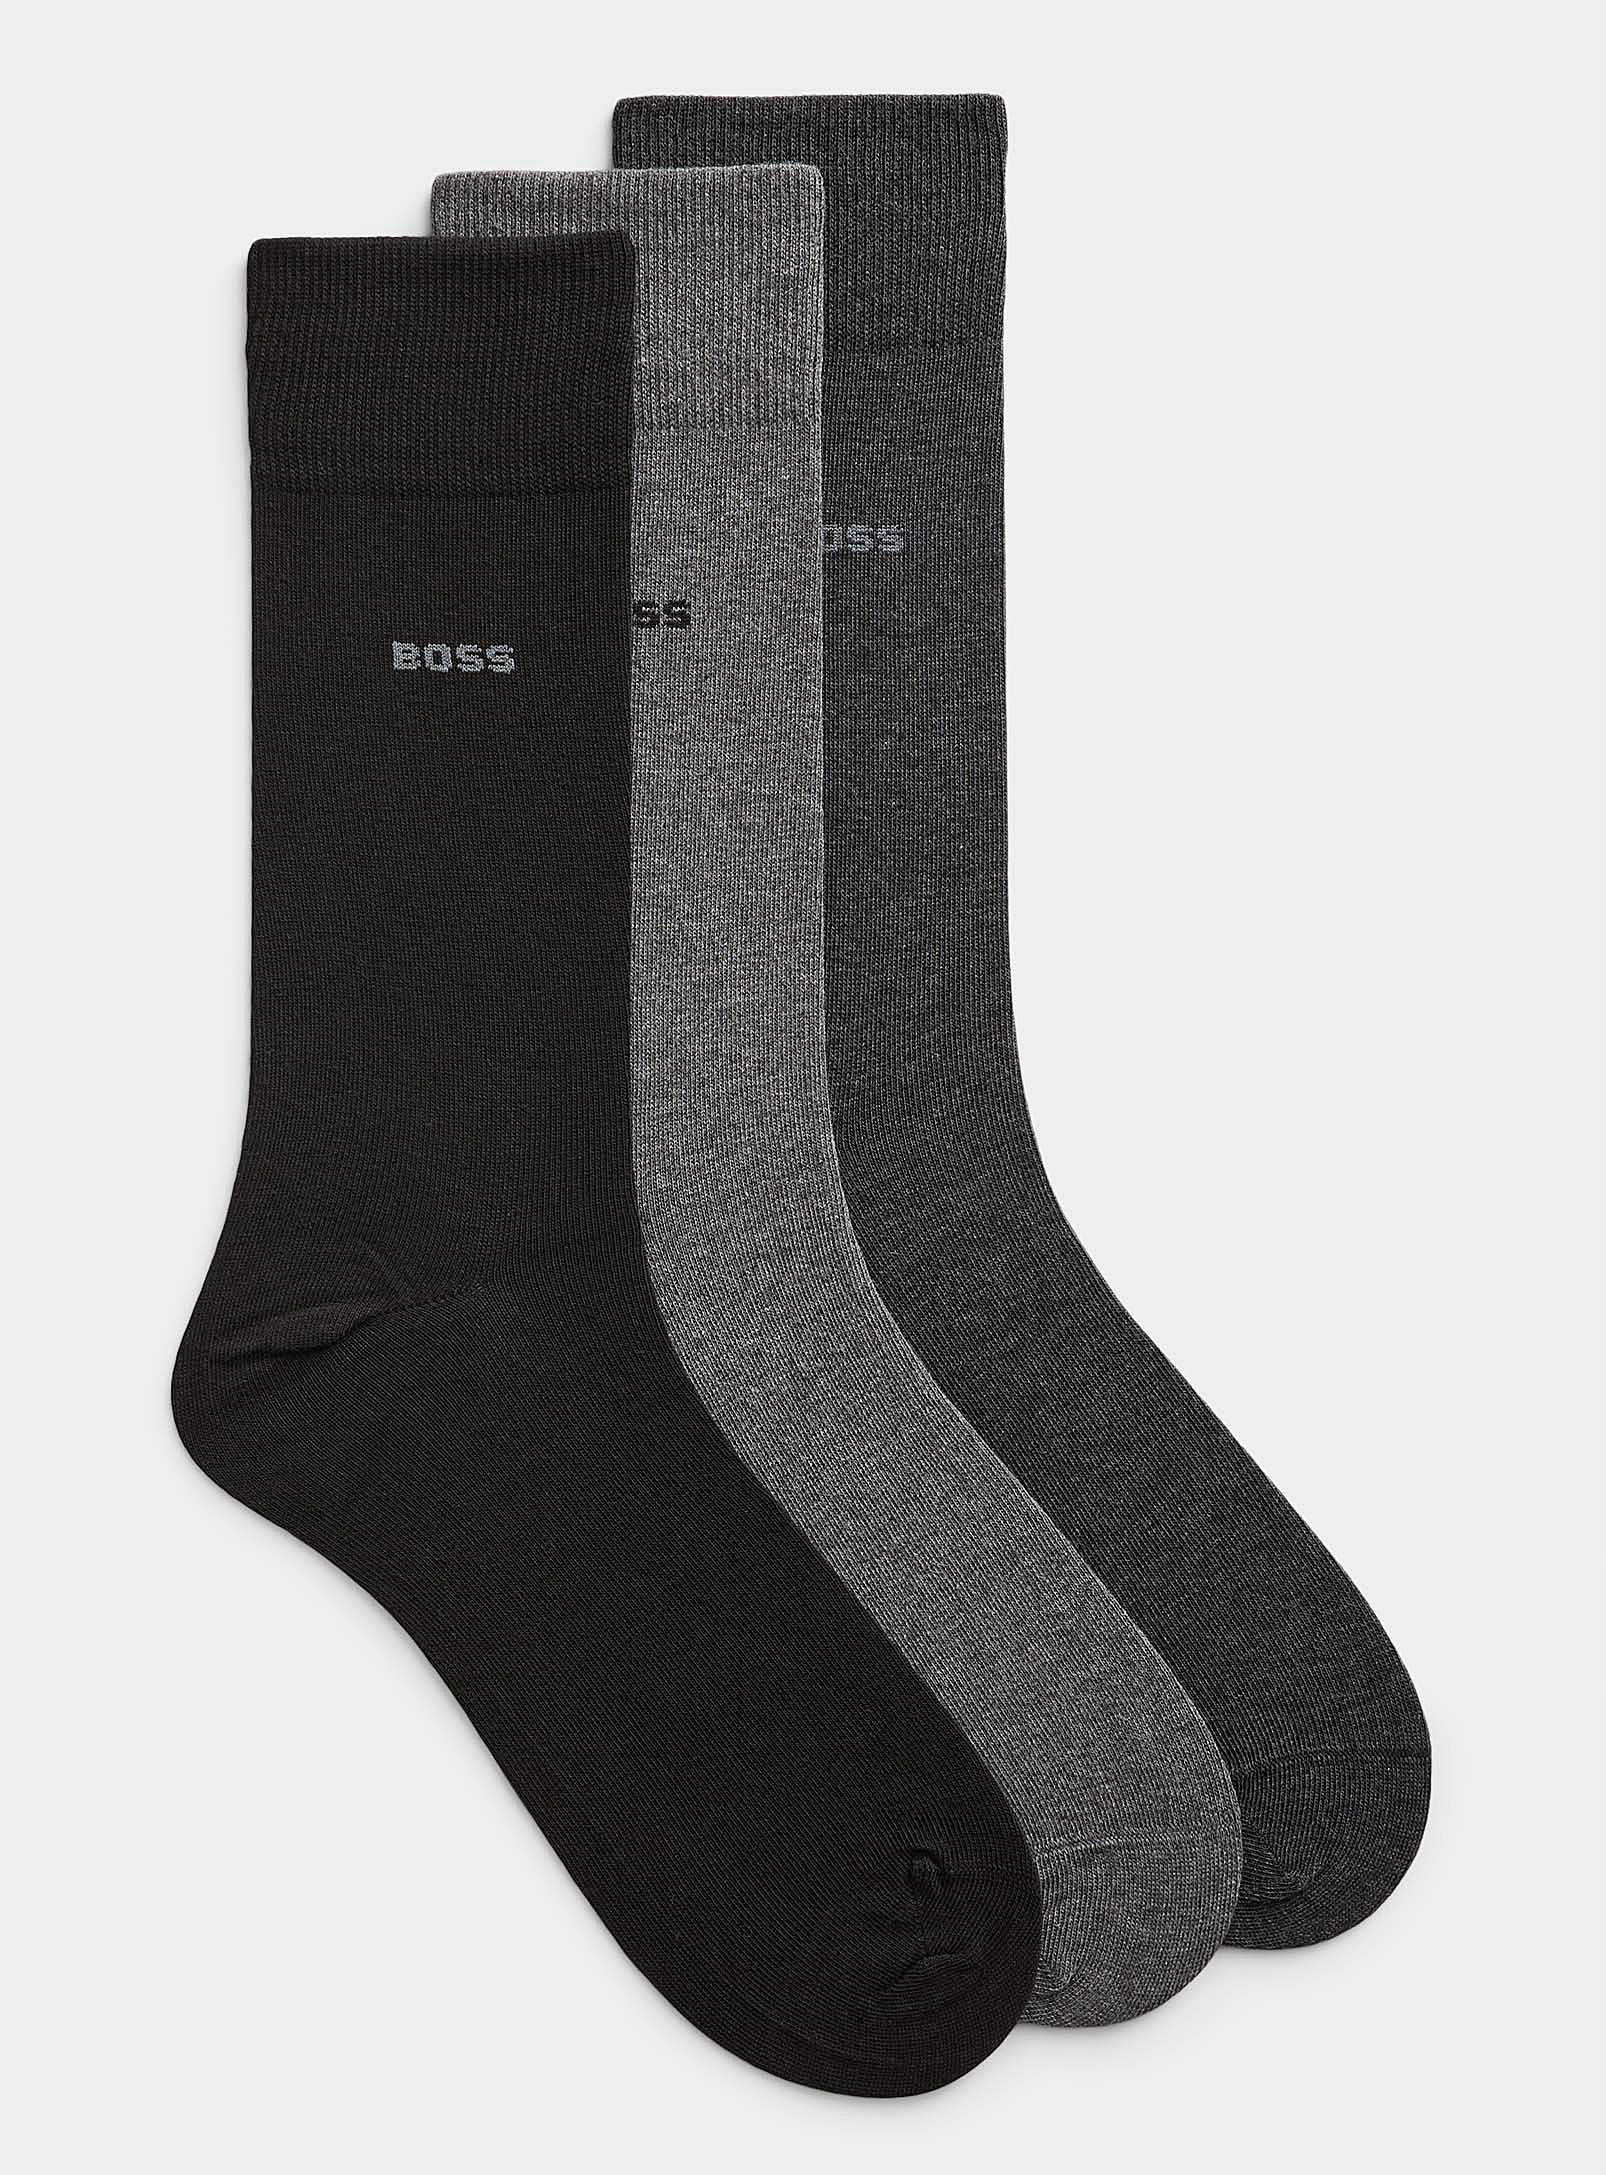 BOSS - Les chaussettes habillées neutres Emballage de 3